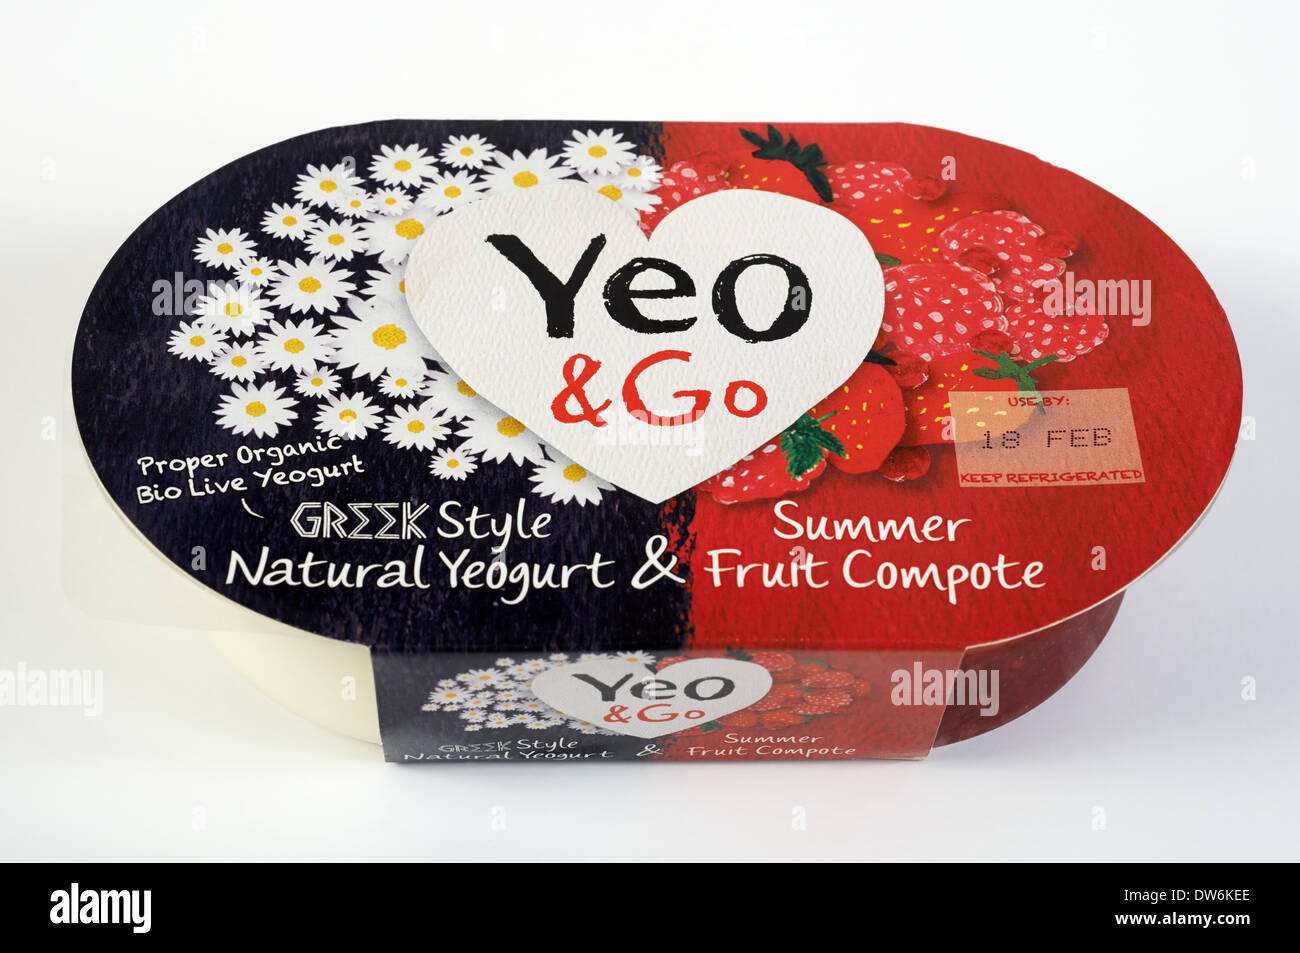 Yeo & Go yogurt with summer fruit compote Stock Photo